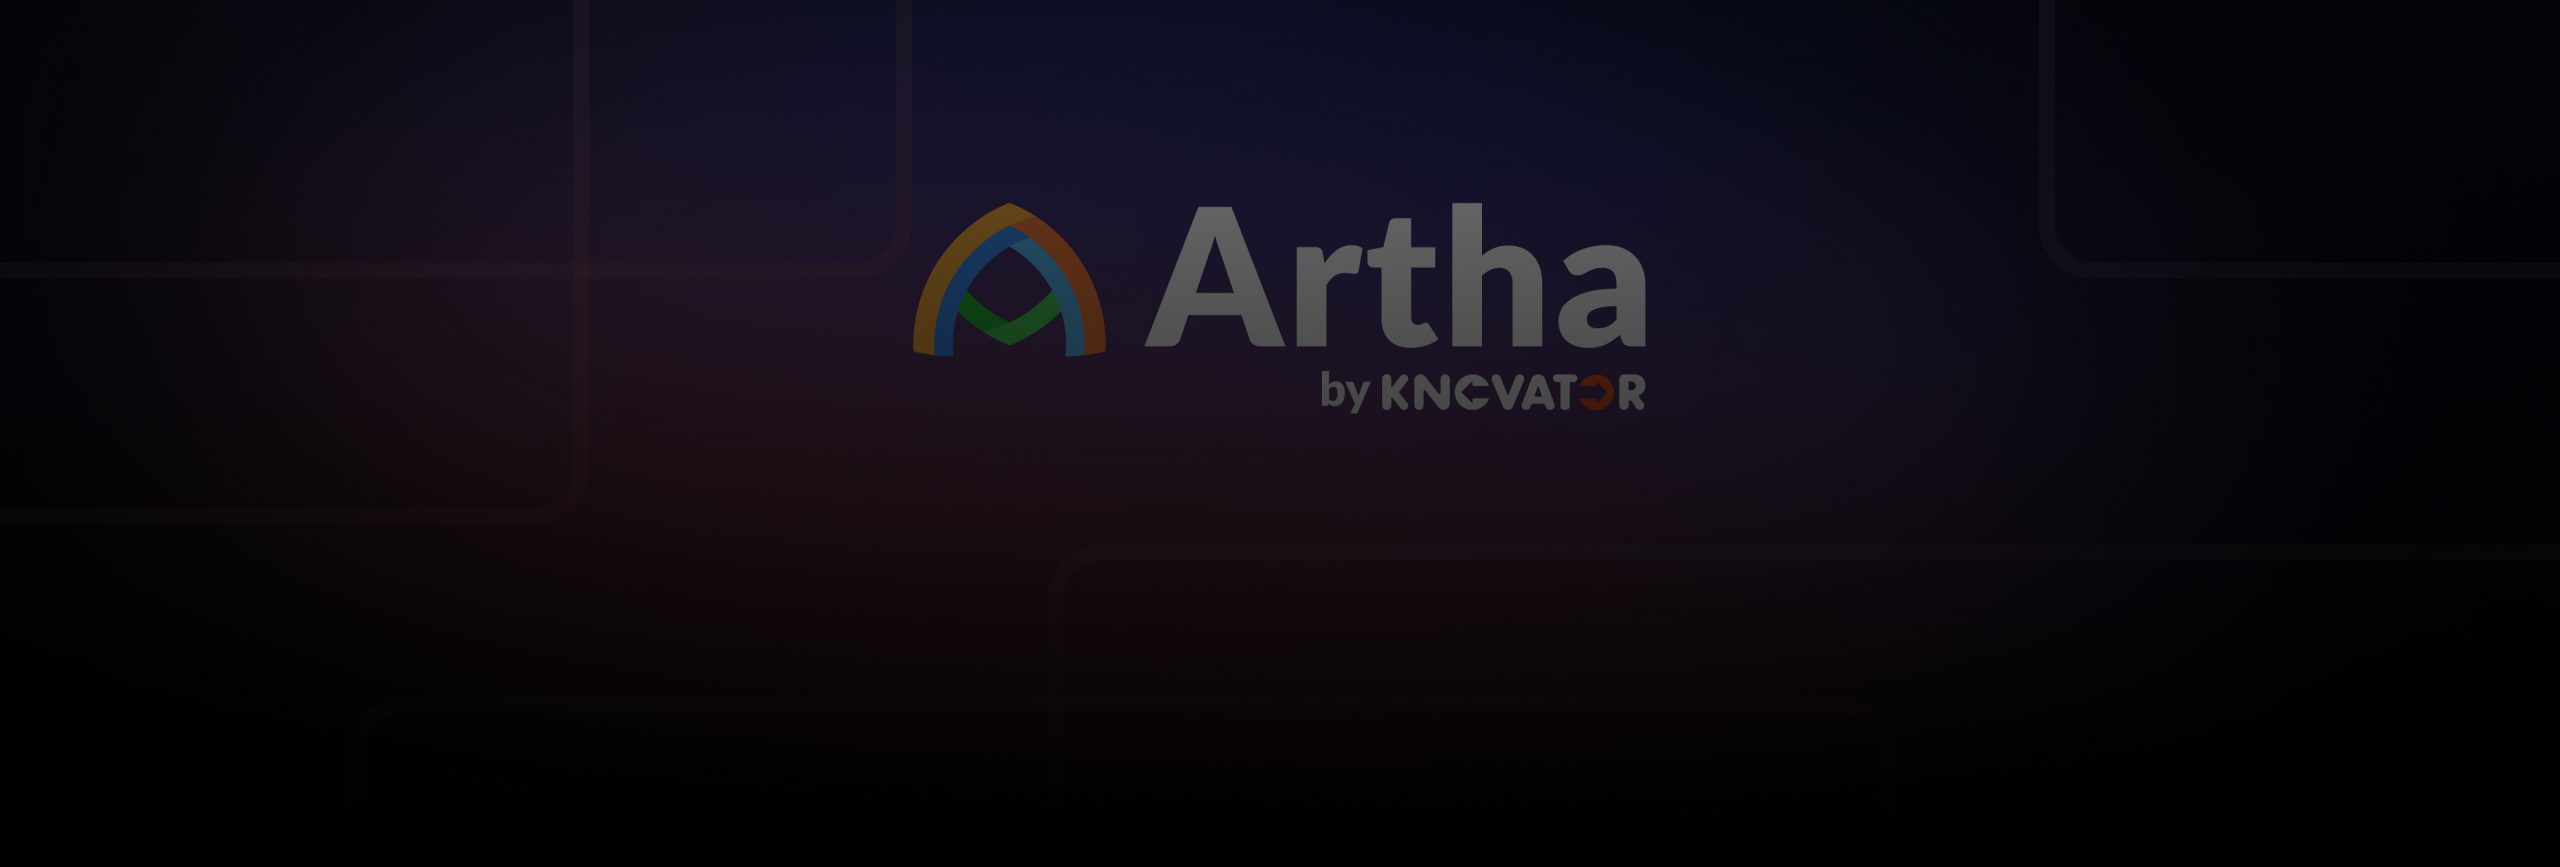 Artha’s Unique Features Redefine Job Seeking & Talent Acquisition